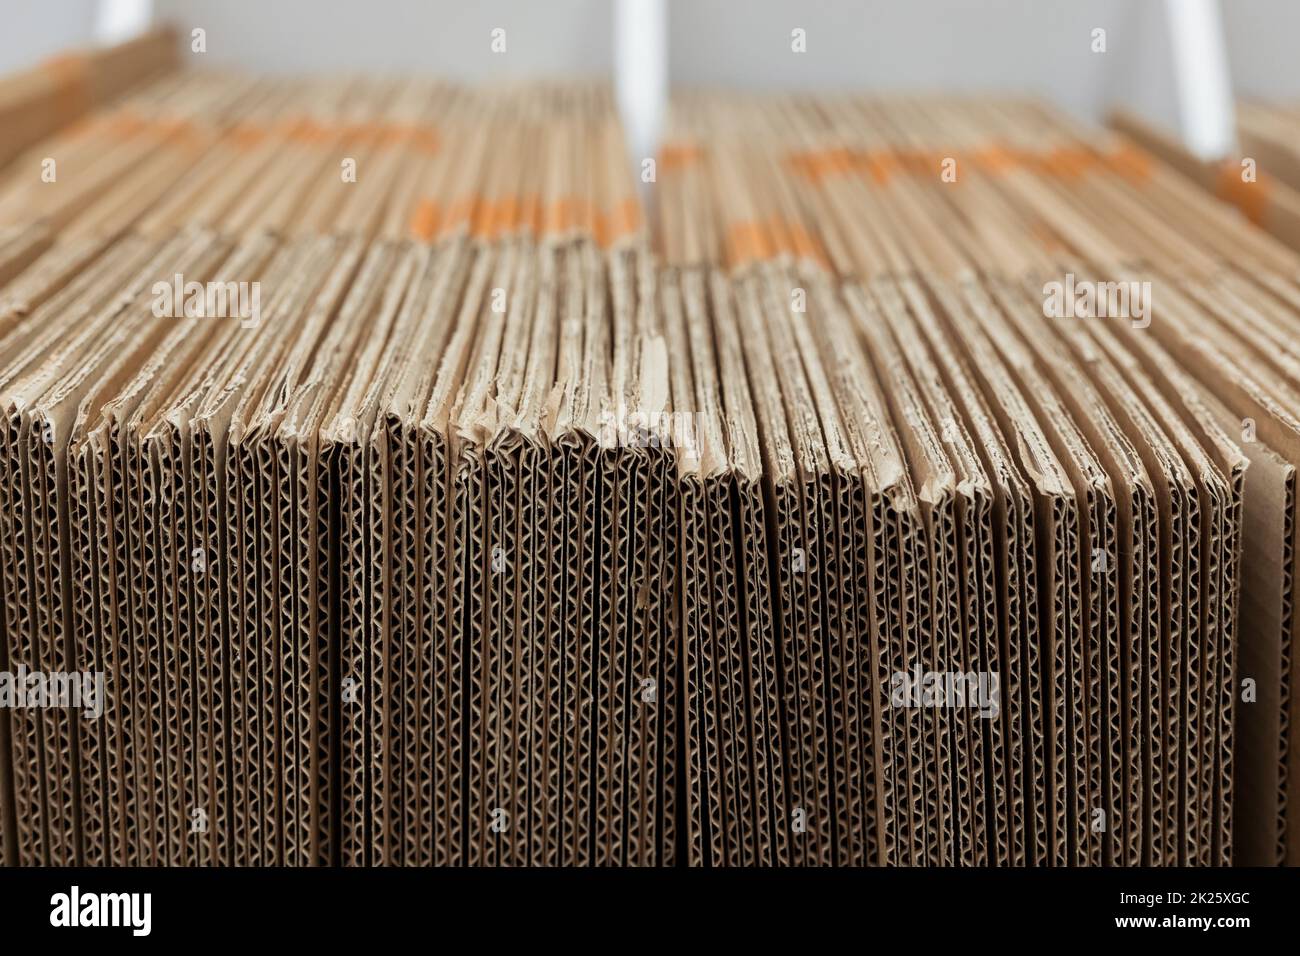 Stapel aus Wellpappe für die Verpackung. Detail des ungleichmäßigen Stapels von Wellpappenblättern. Querschnitt Stockfoto